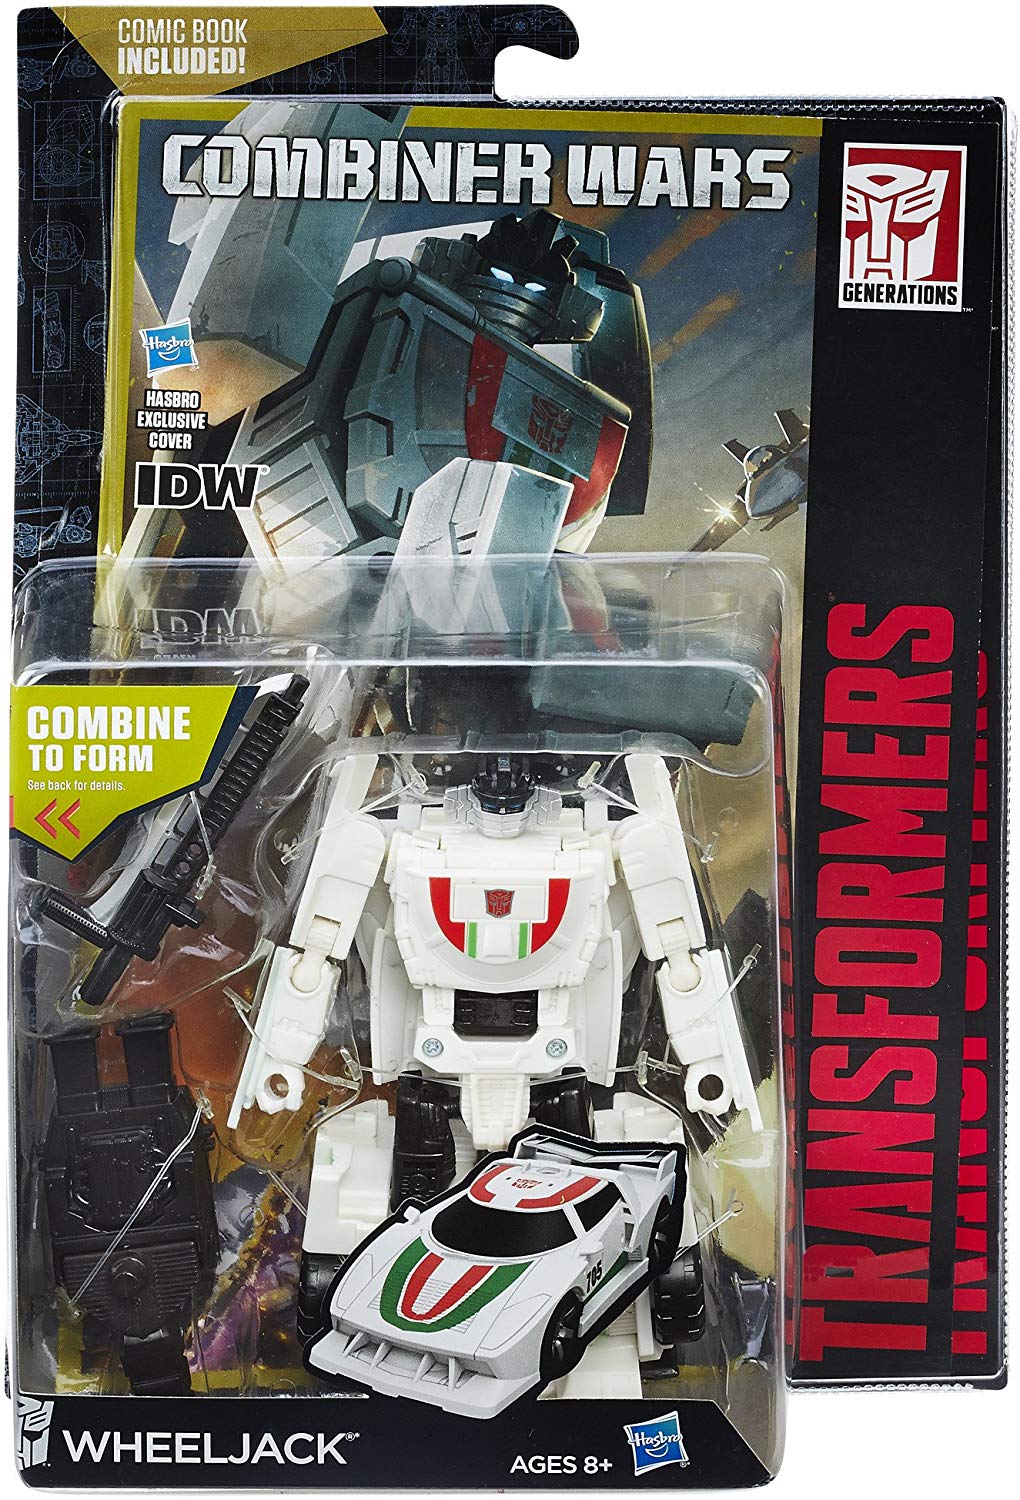 Transformers Generations Combiner Wars Deluxe Class Wheeljack Action Figure 1